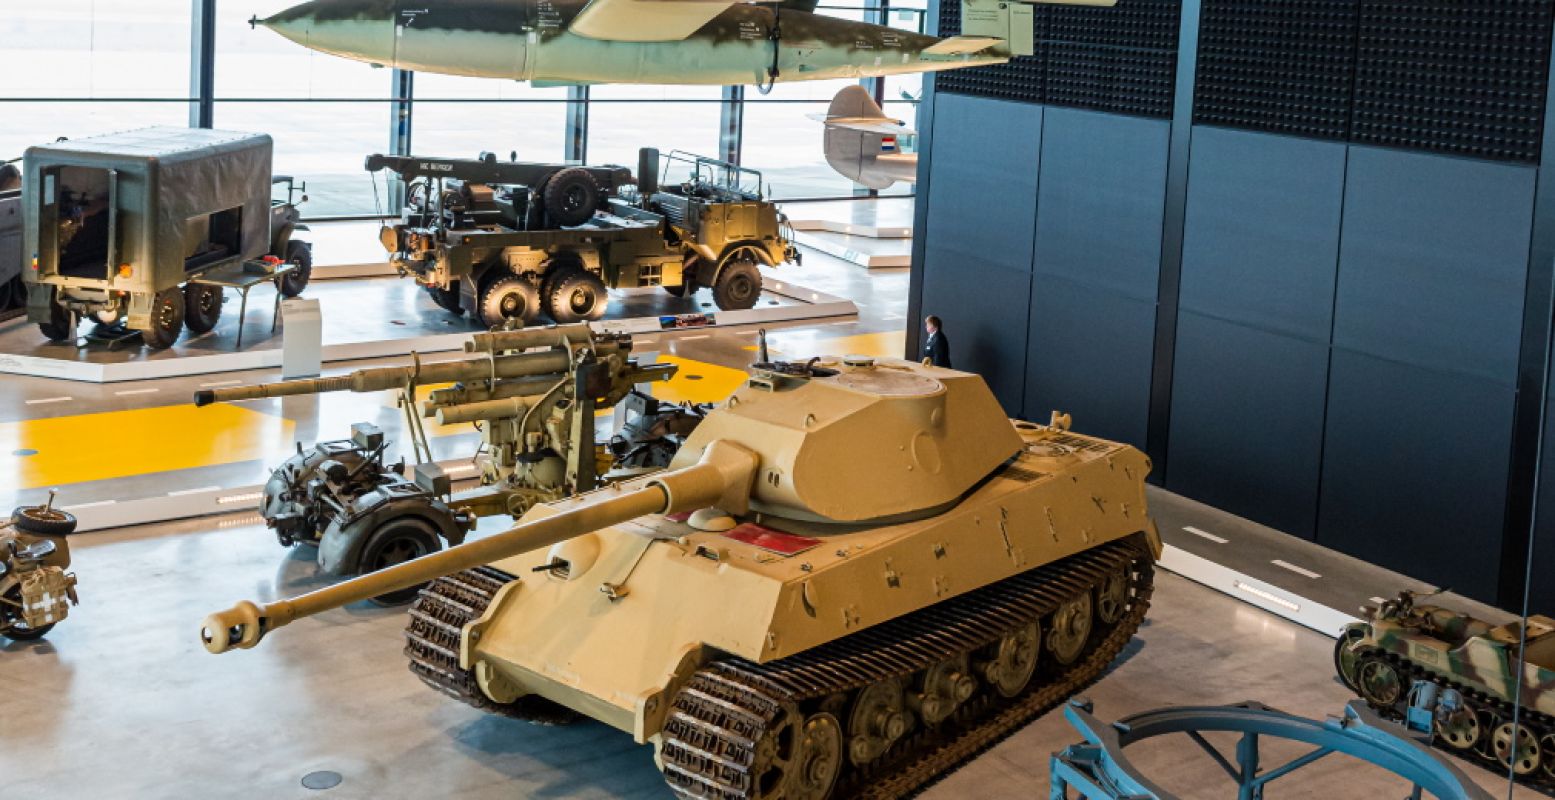 Tiger II, Königstiger, was een van de zwaarste tanks van de Tweede Wereldoorlog. In januari 1944 werden er 500 exemplaren geproduceerd. Ondanks hun superioriteit konden ze de loop van de oorlog niet meer beïnvloeden. Foto: Nationaal Militair Museum.